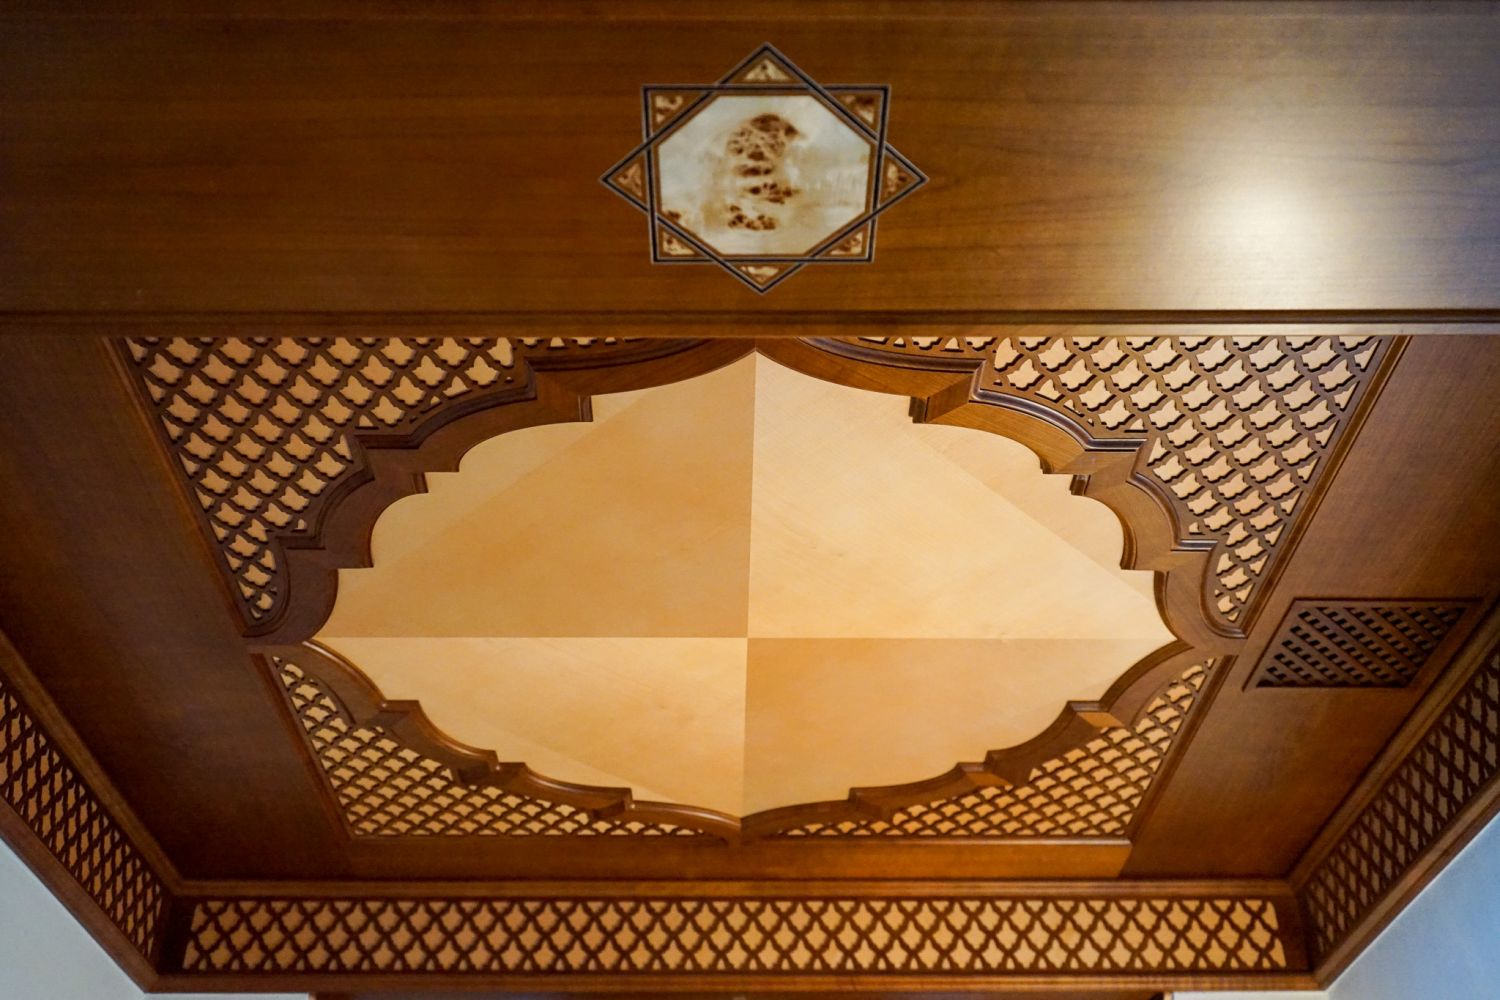 Maurischer-stil-maurische-deckengestaltung-aus-kirschholz-mit-intarsien-aus-pappelmaser-und-aufwaendigen-ornamenten